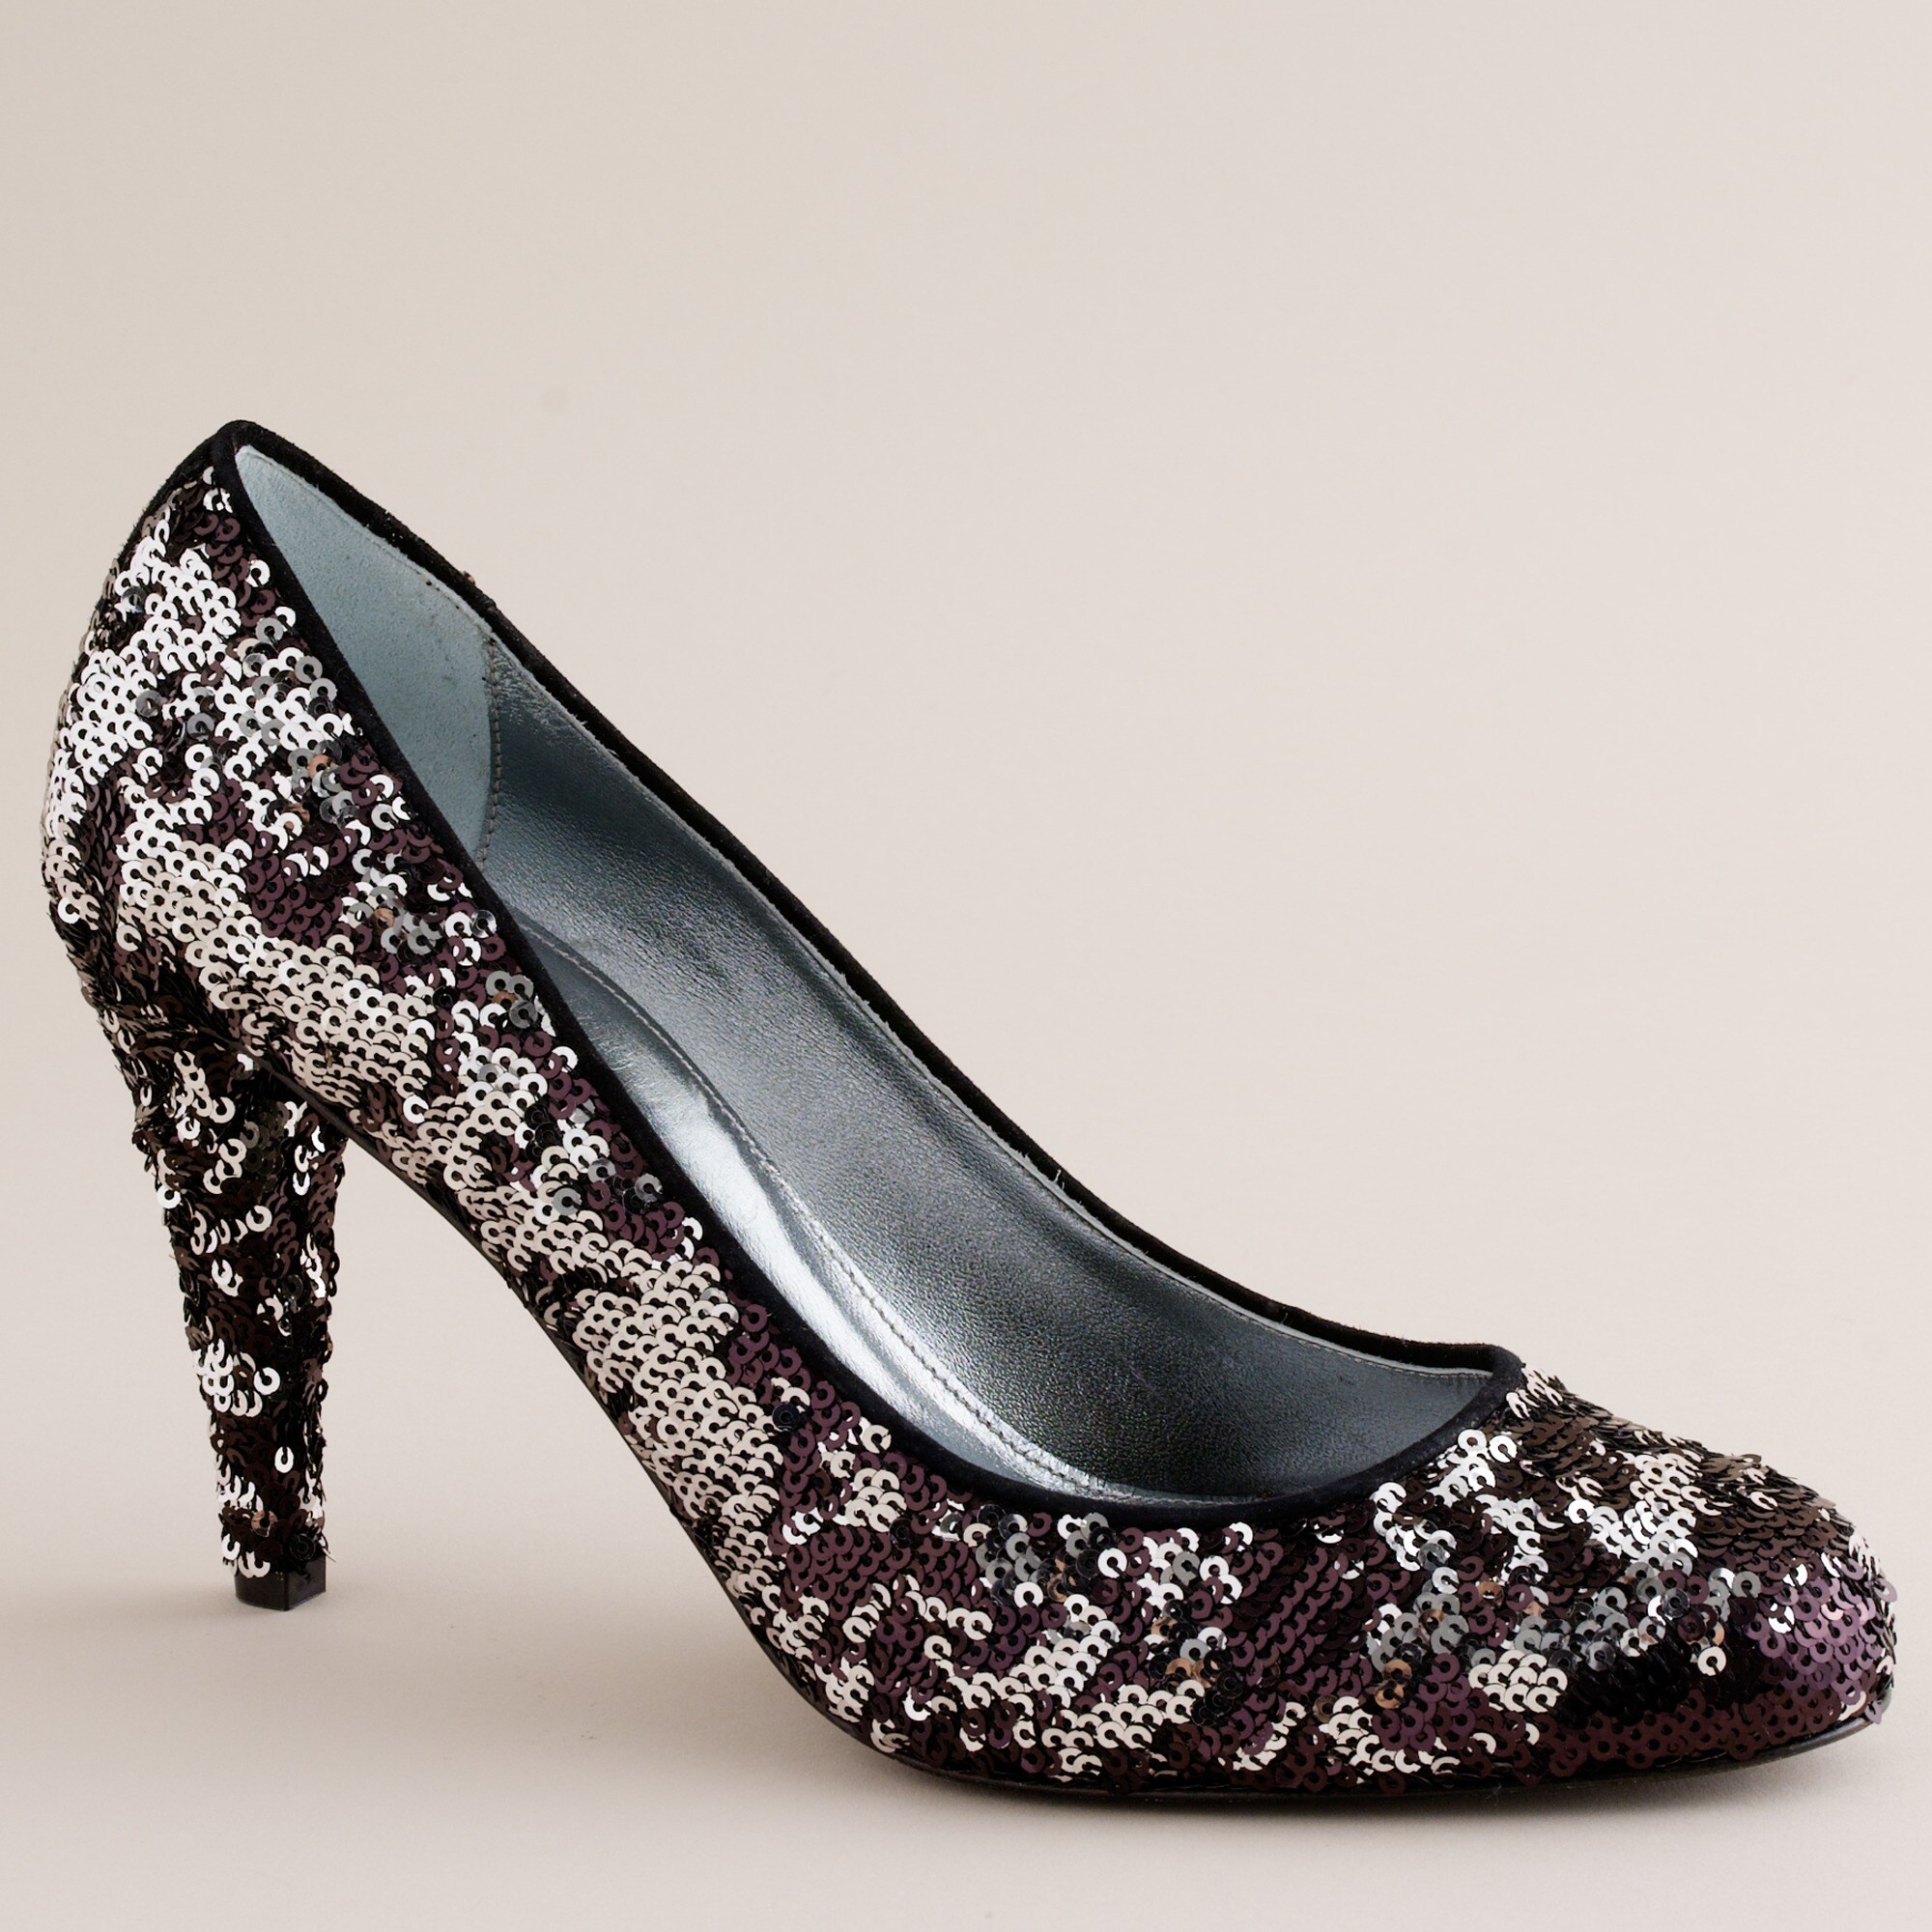 Starling heels : | J.Crew